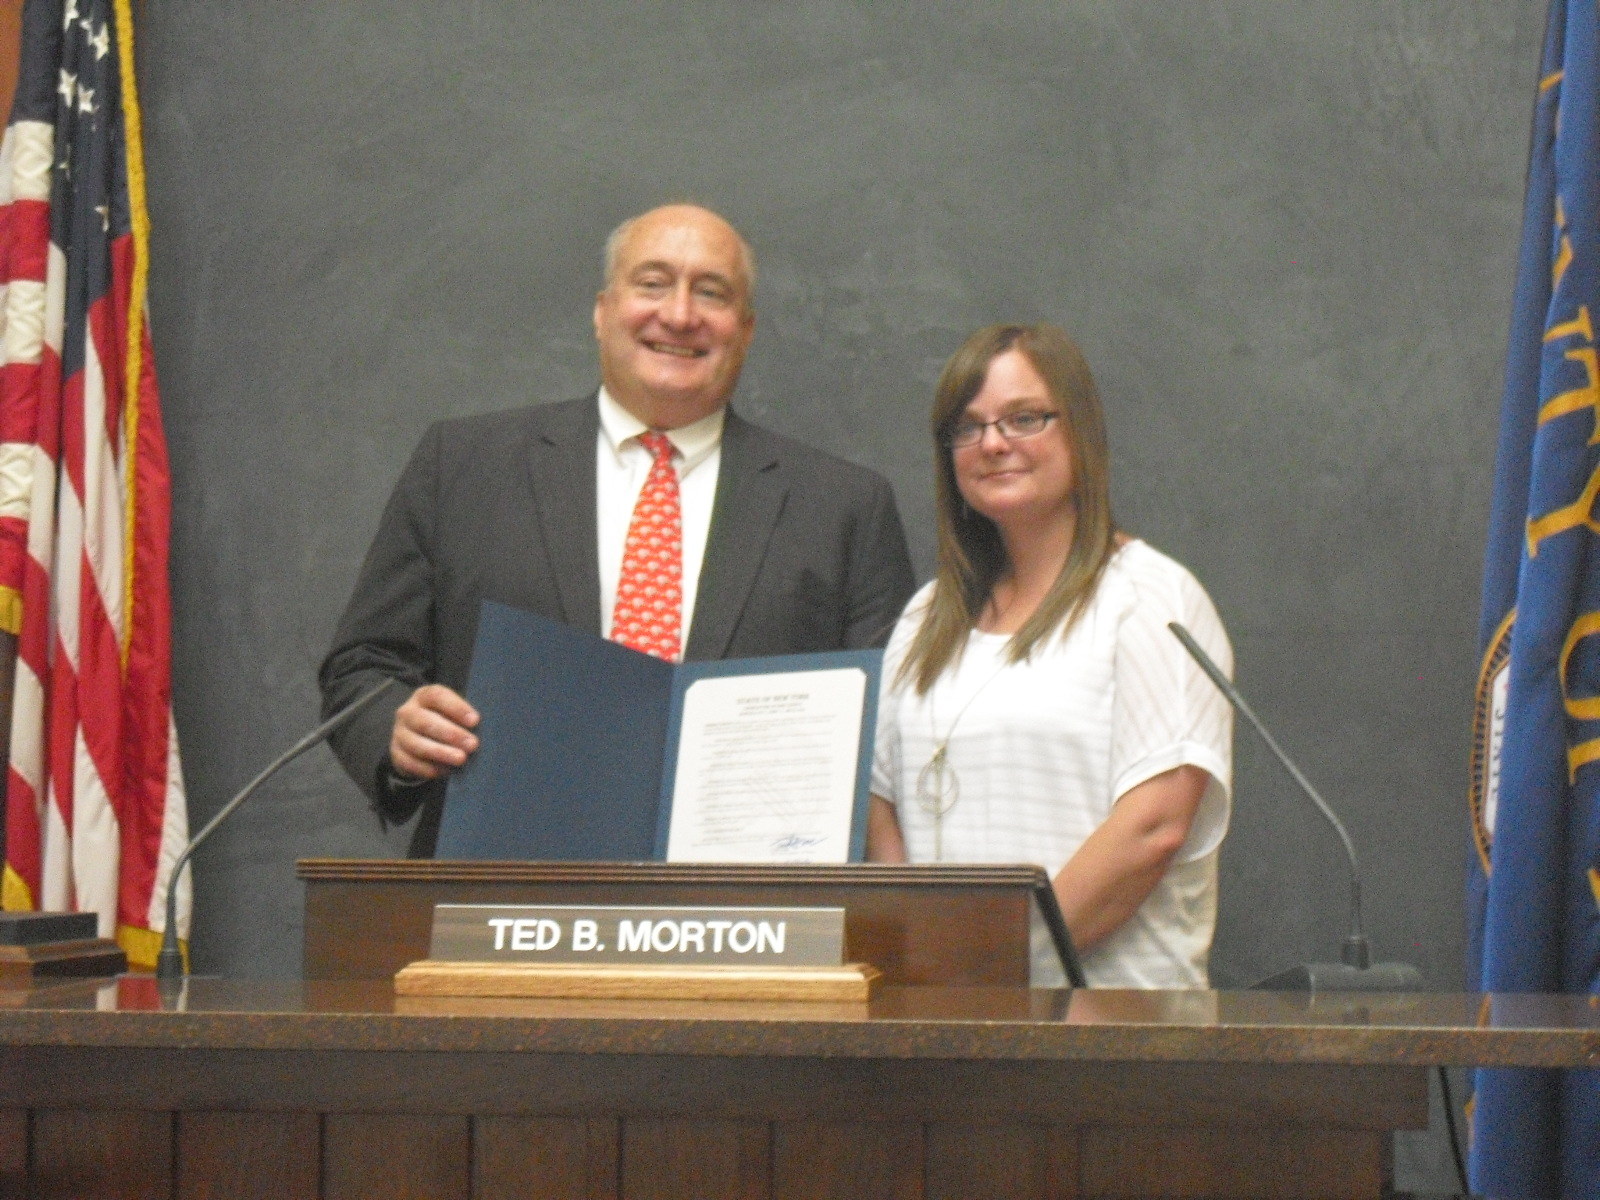 Renee Cerullo and Ted Morton Erie County Legislator